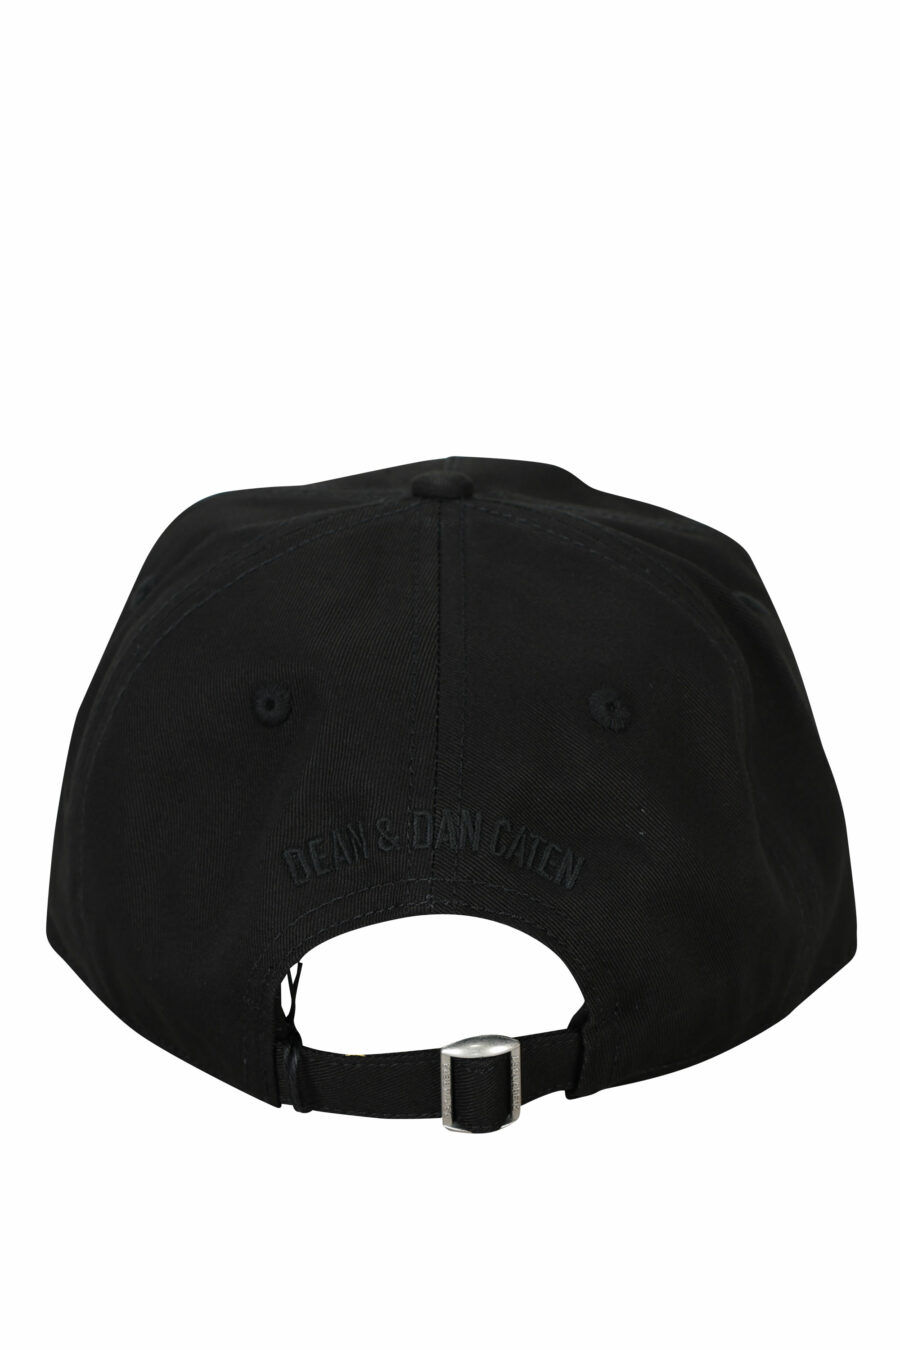 Black cap with monochrome "icon" maxilogue - 8055777275689 1